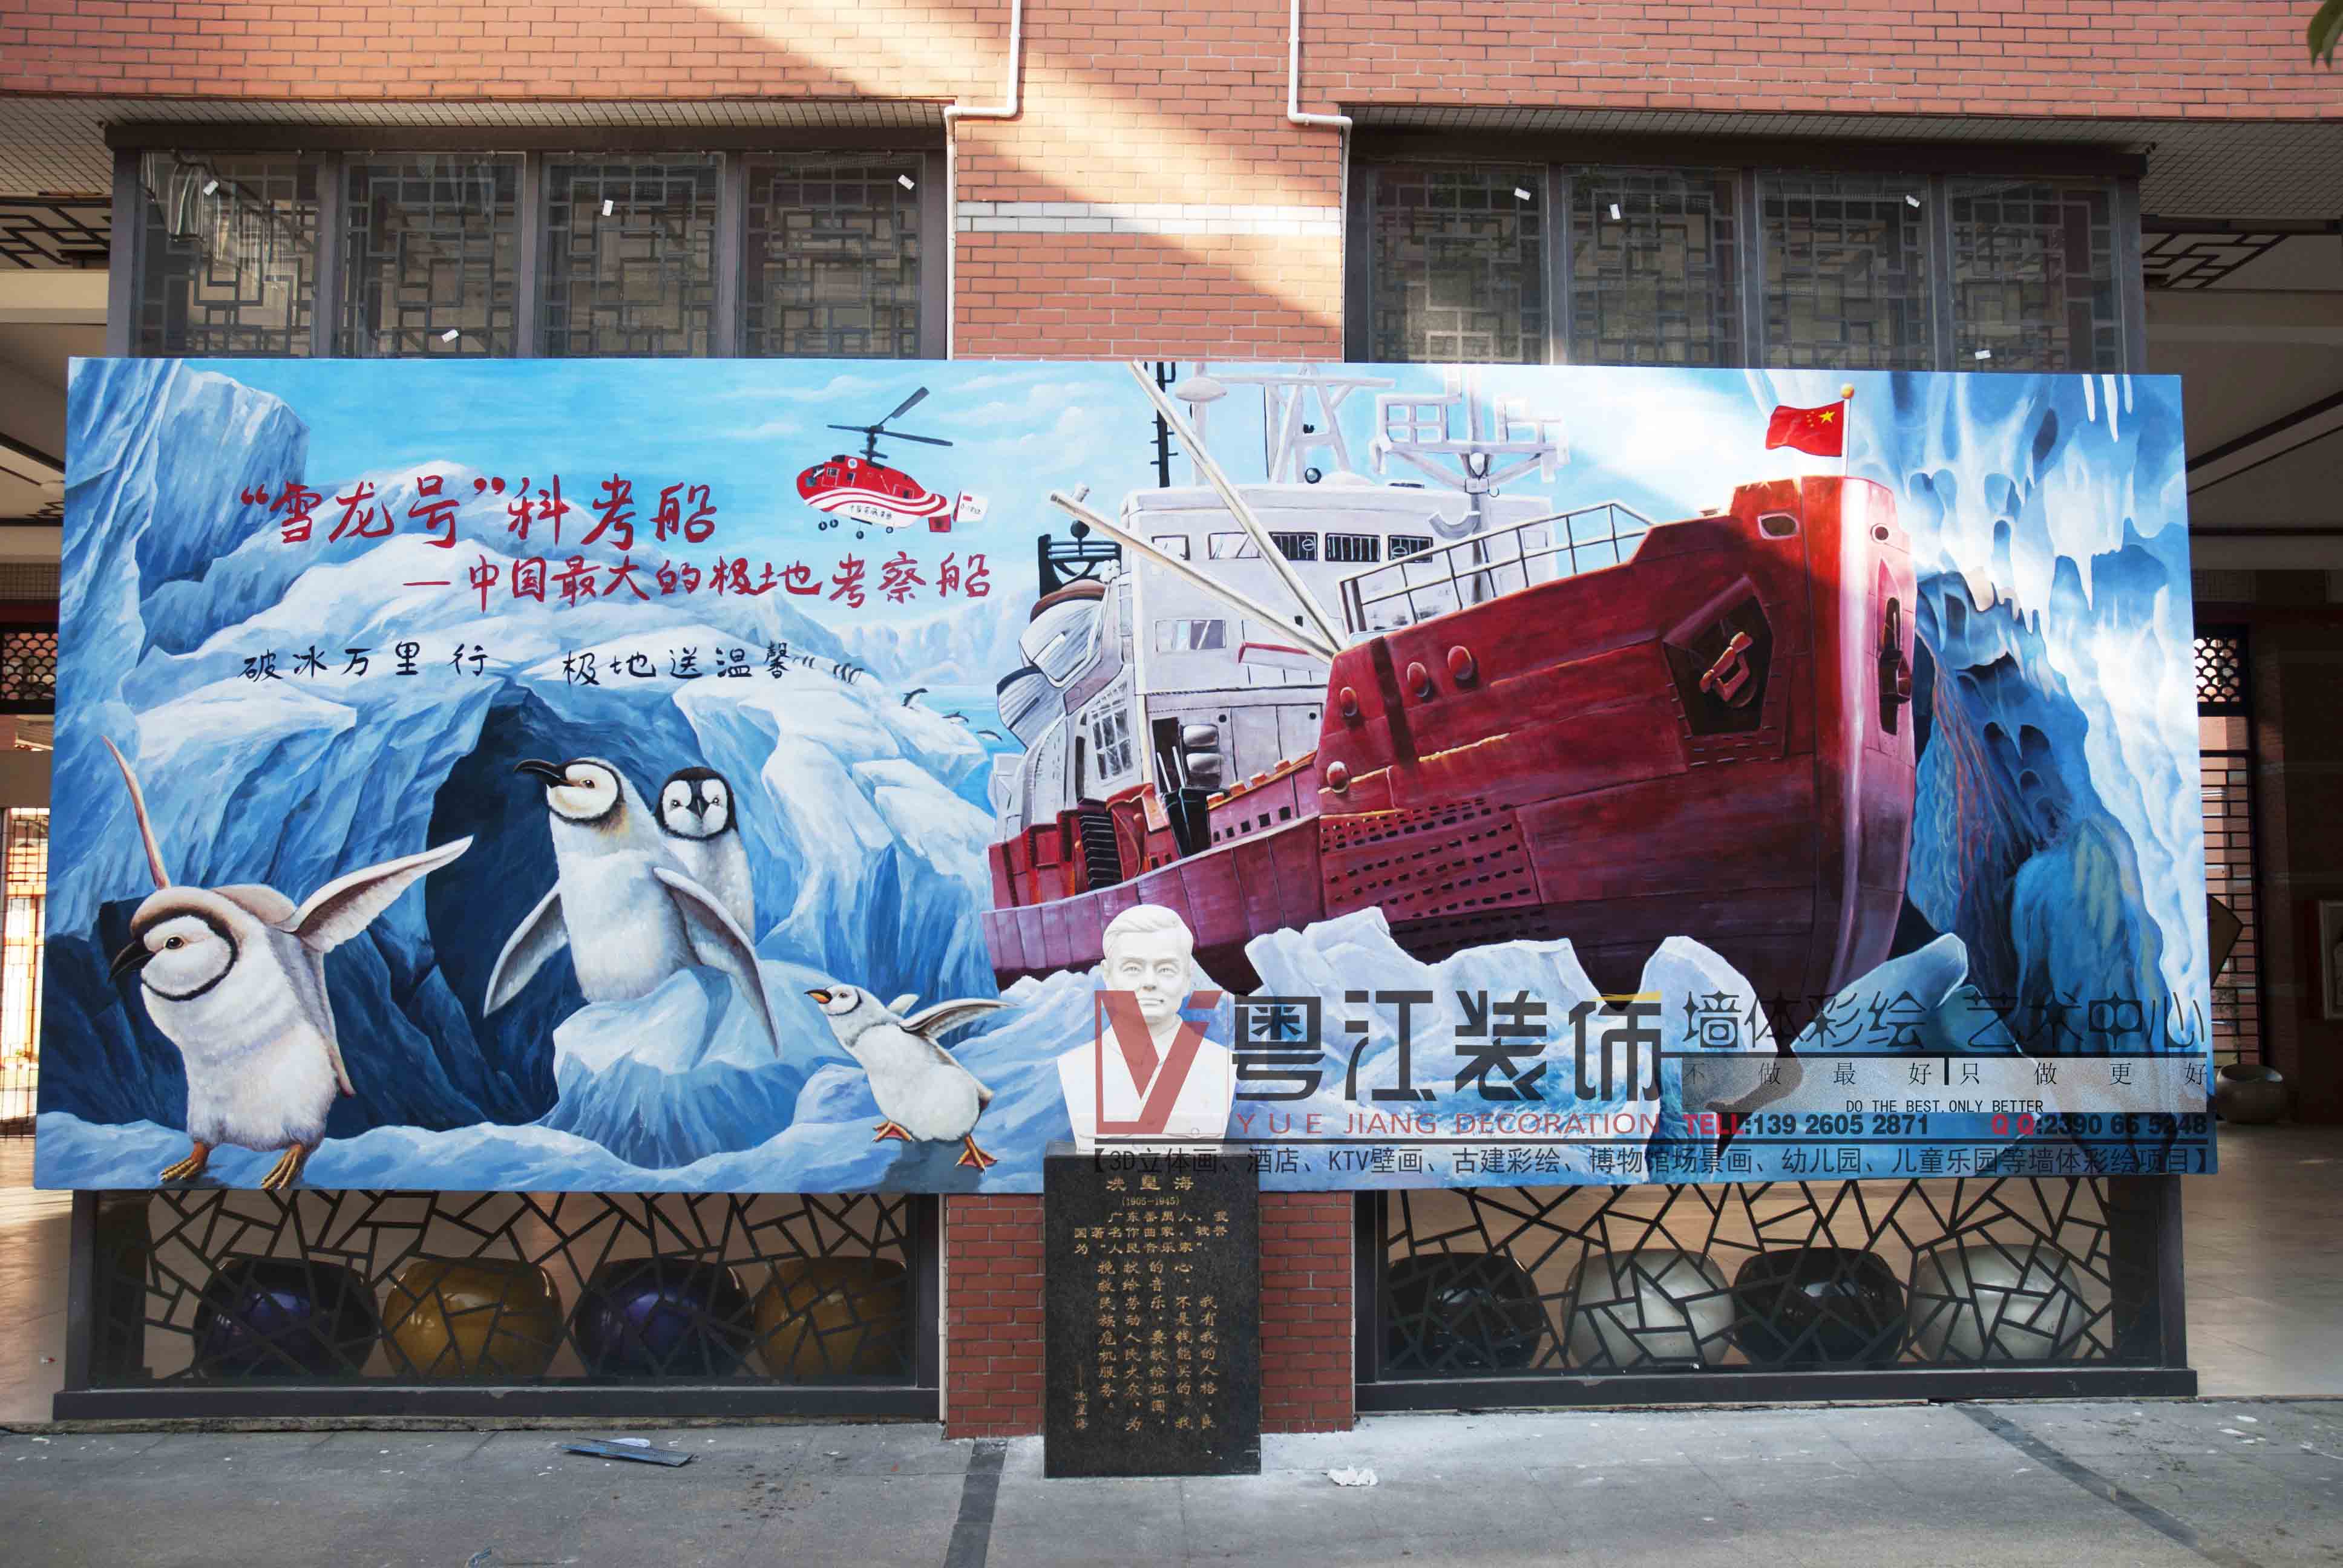 广州雪龙号南极科考队3D校园文化建设手绘壁画